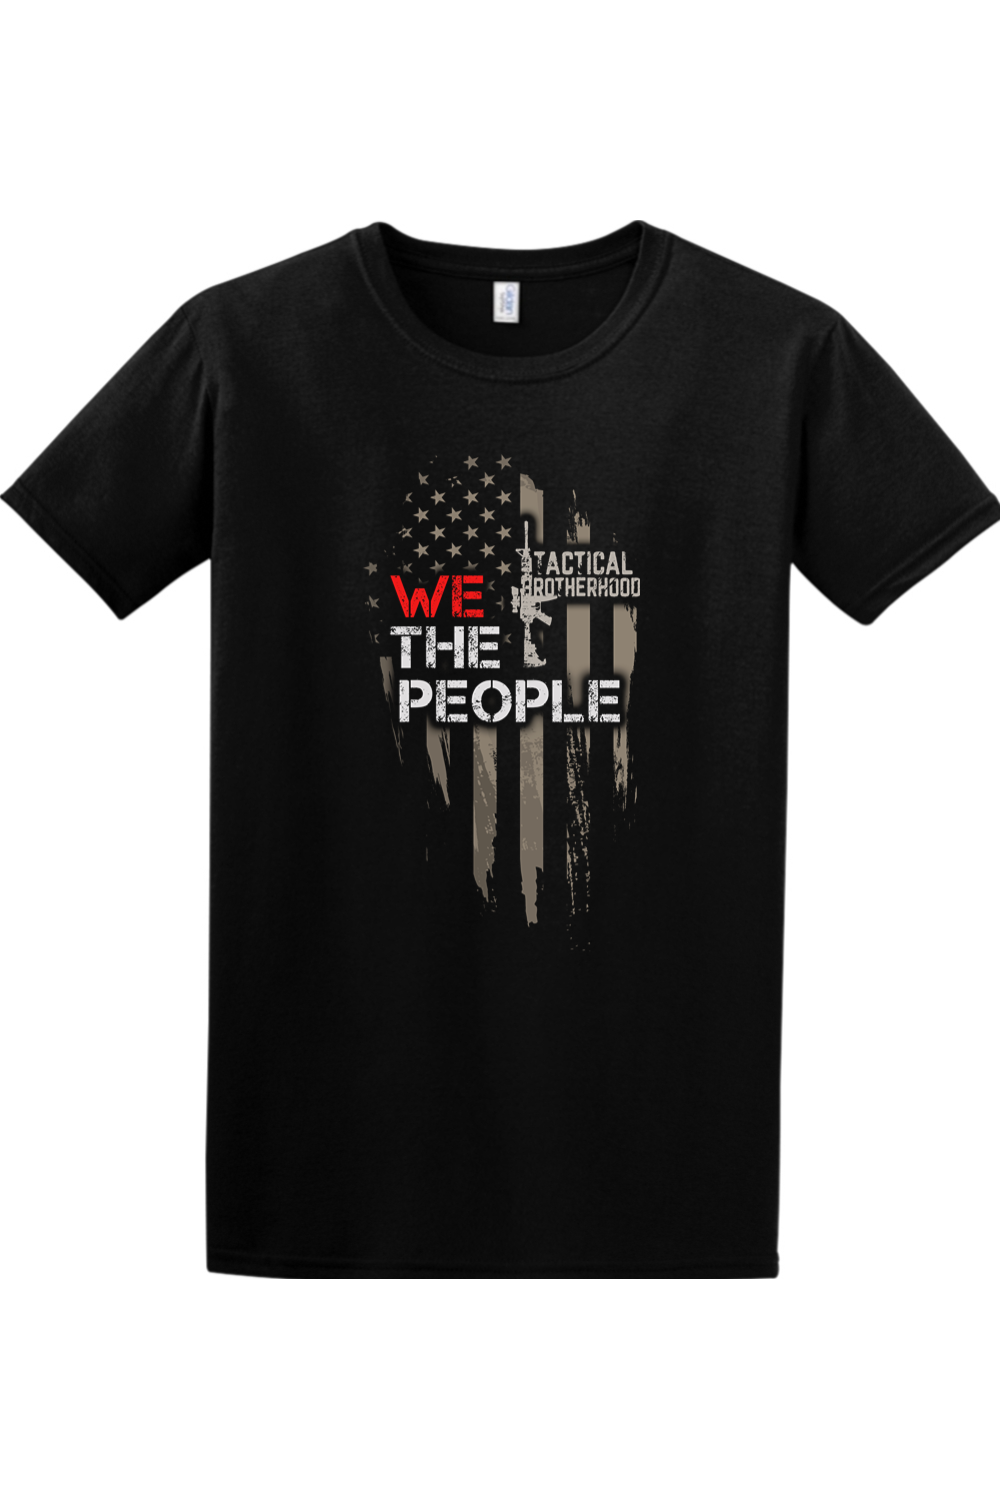 OG 7 - We The People